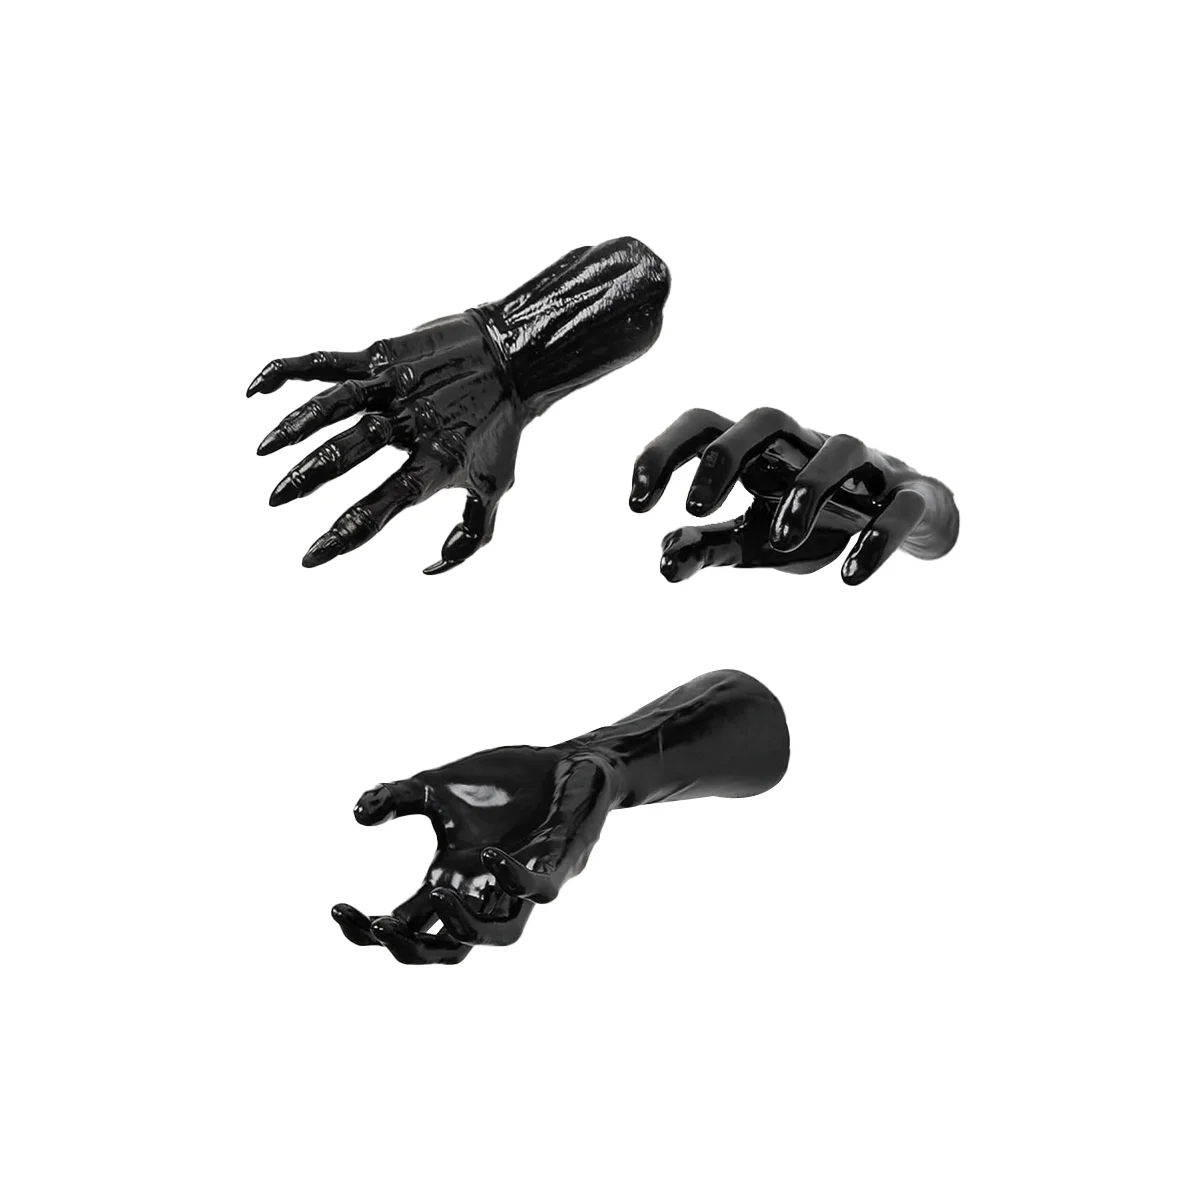 

Украшения для Хэллоуина, комнатные настенные ползучие руки в натуральную величину, набор из 3 страшных рук для украшения стен